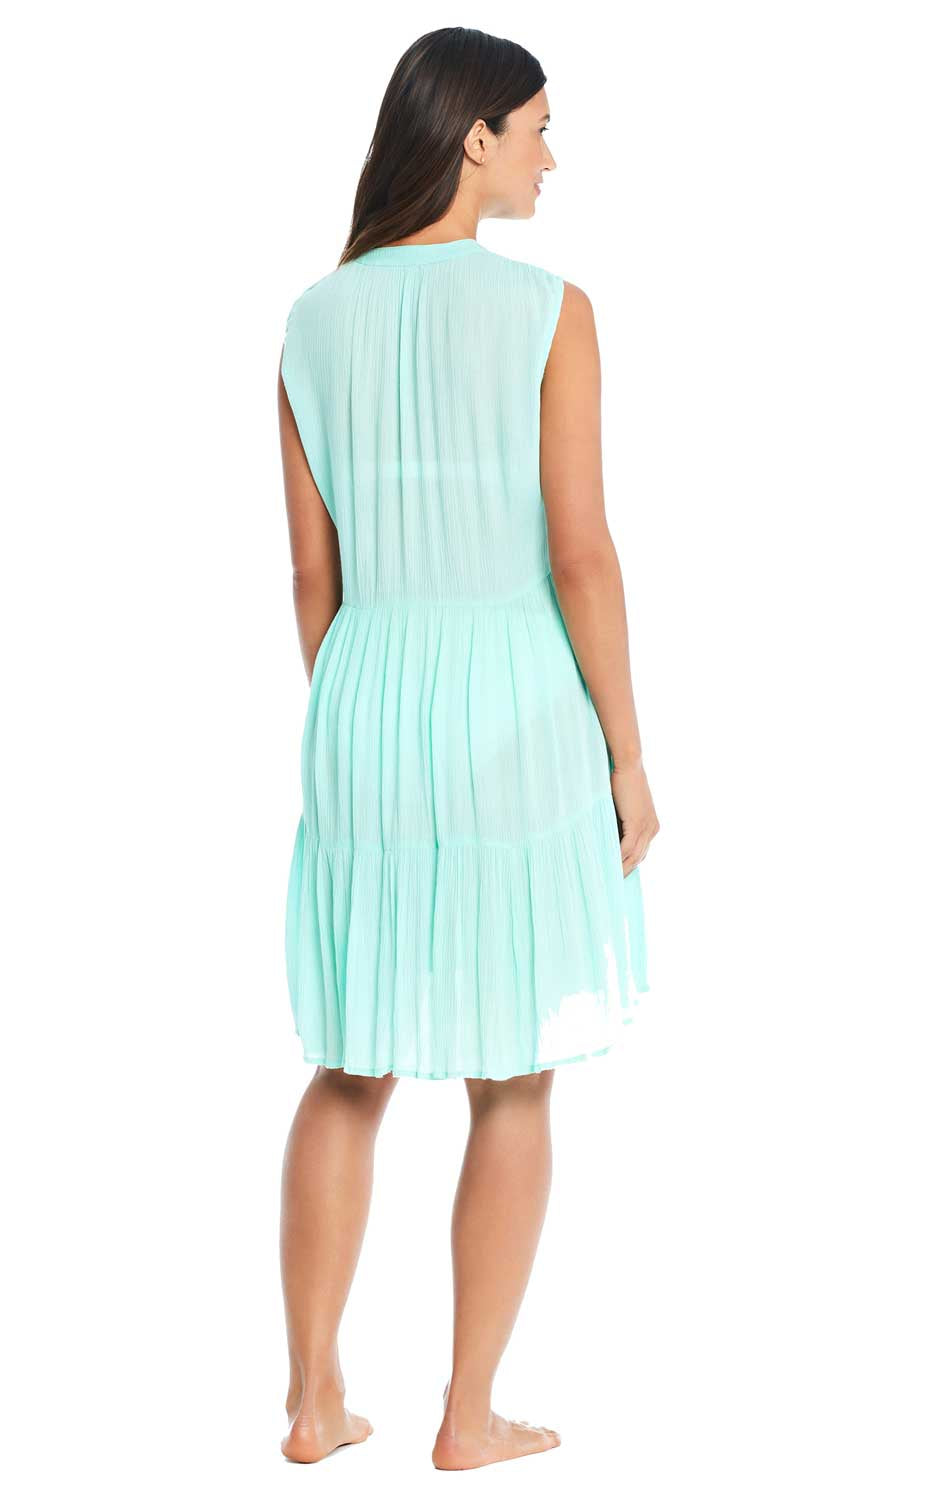 Bleu: Pool Party Solid Short Dress 